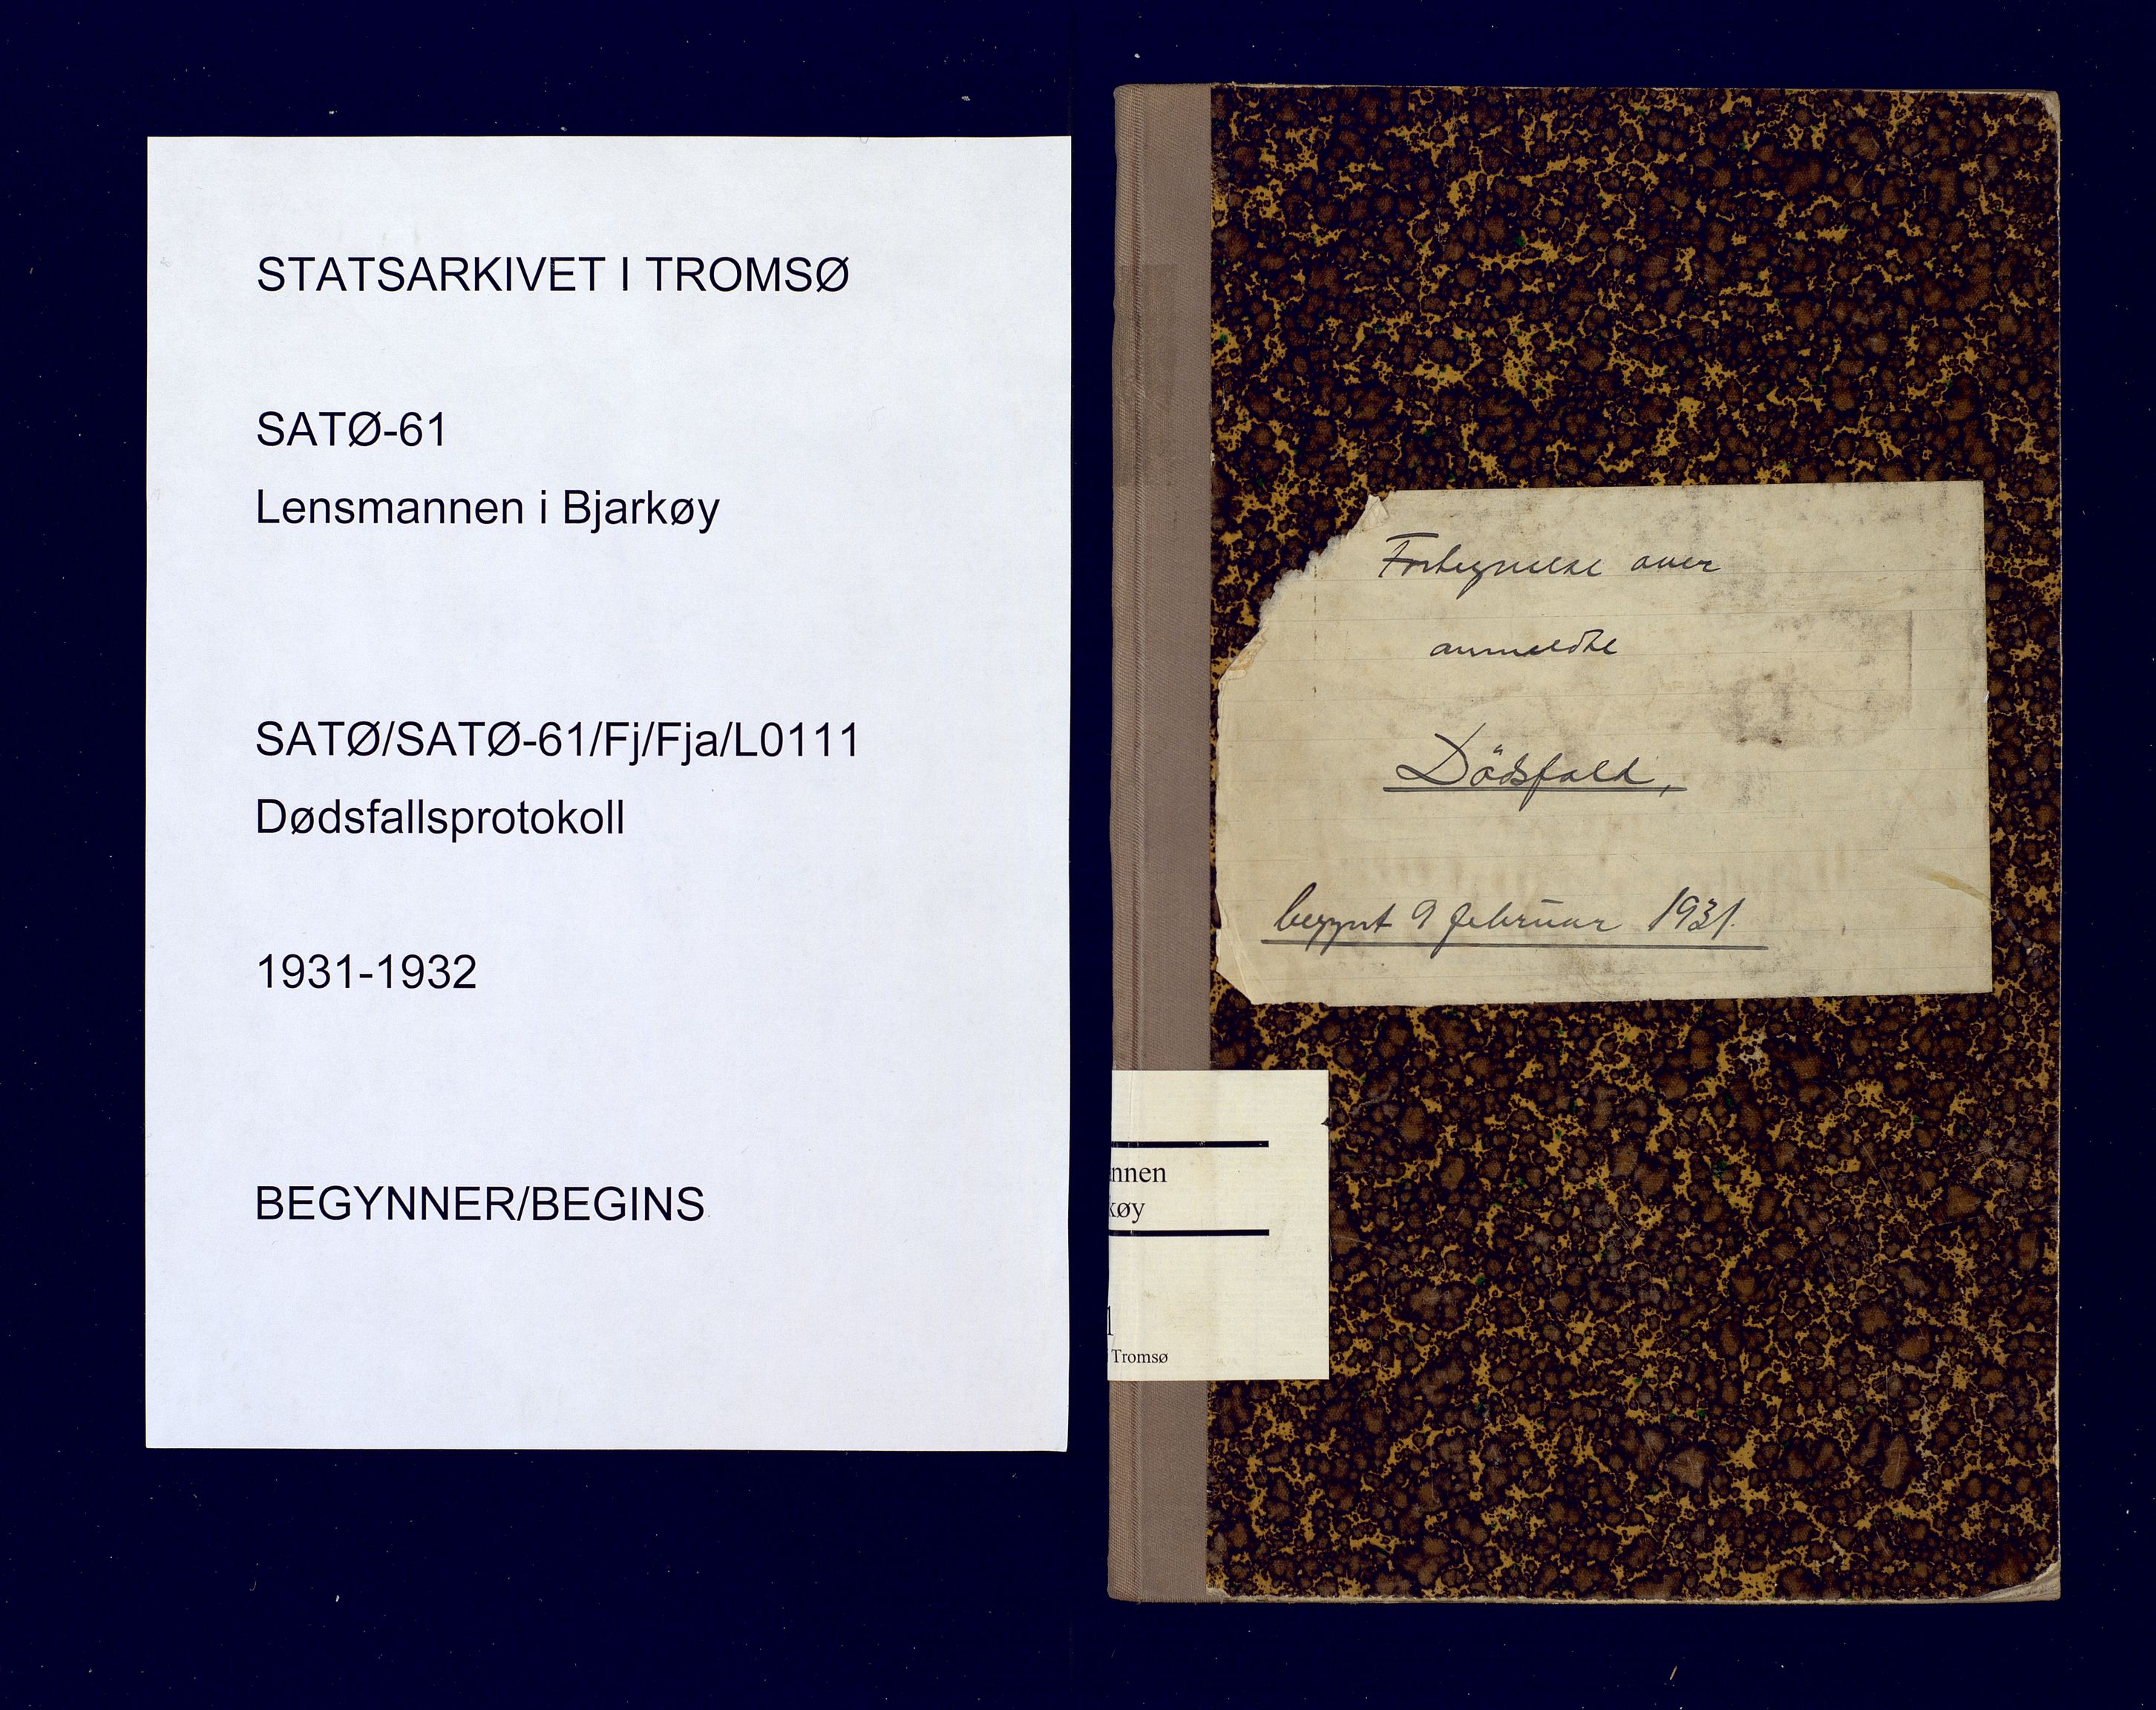 Bjarkøy lensmannskontor, SATØ/SATØ-61/F/Fj/Fja/L0111: Dødsfallsprotokoll, med register løst i boken, 1931-1932